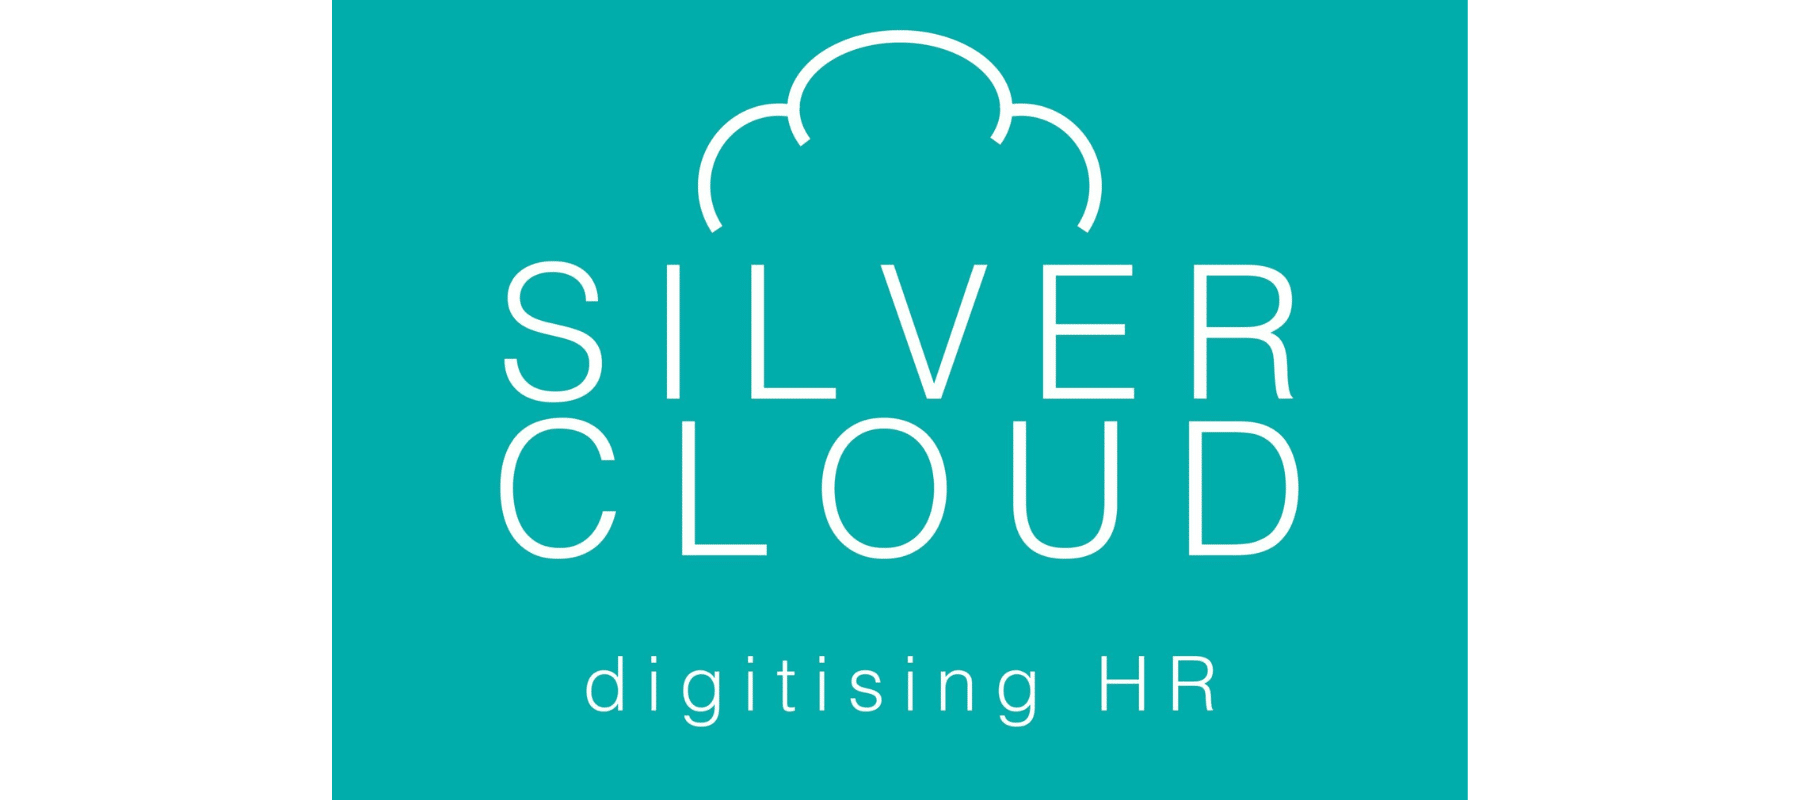 Silver Cloud logo strategic HR